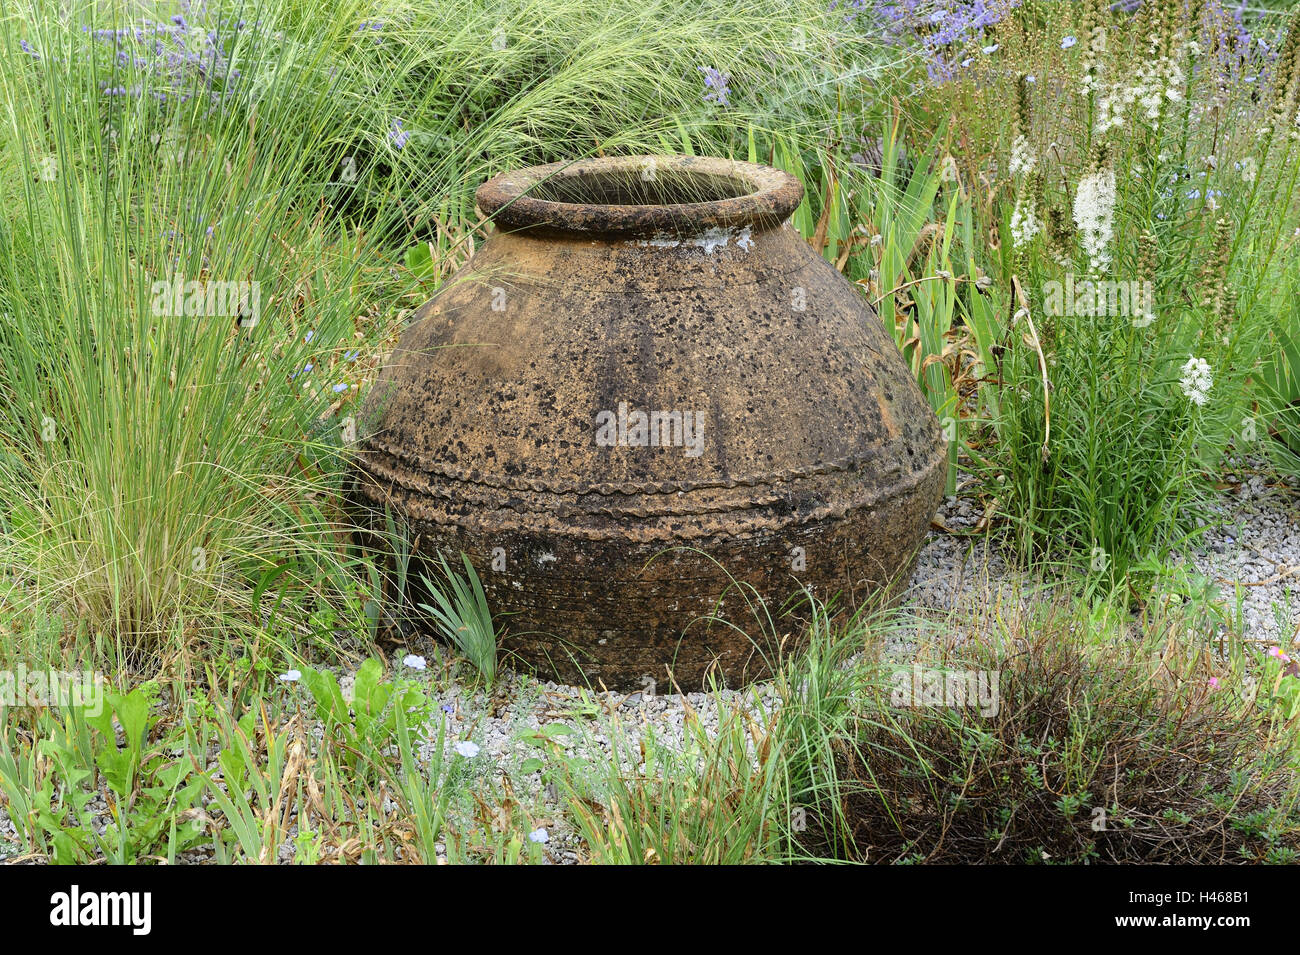 Garden, clay vase, Stock Photo